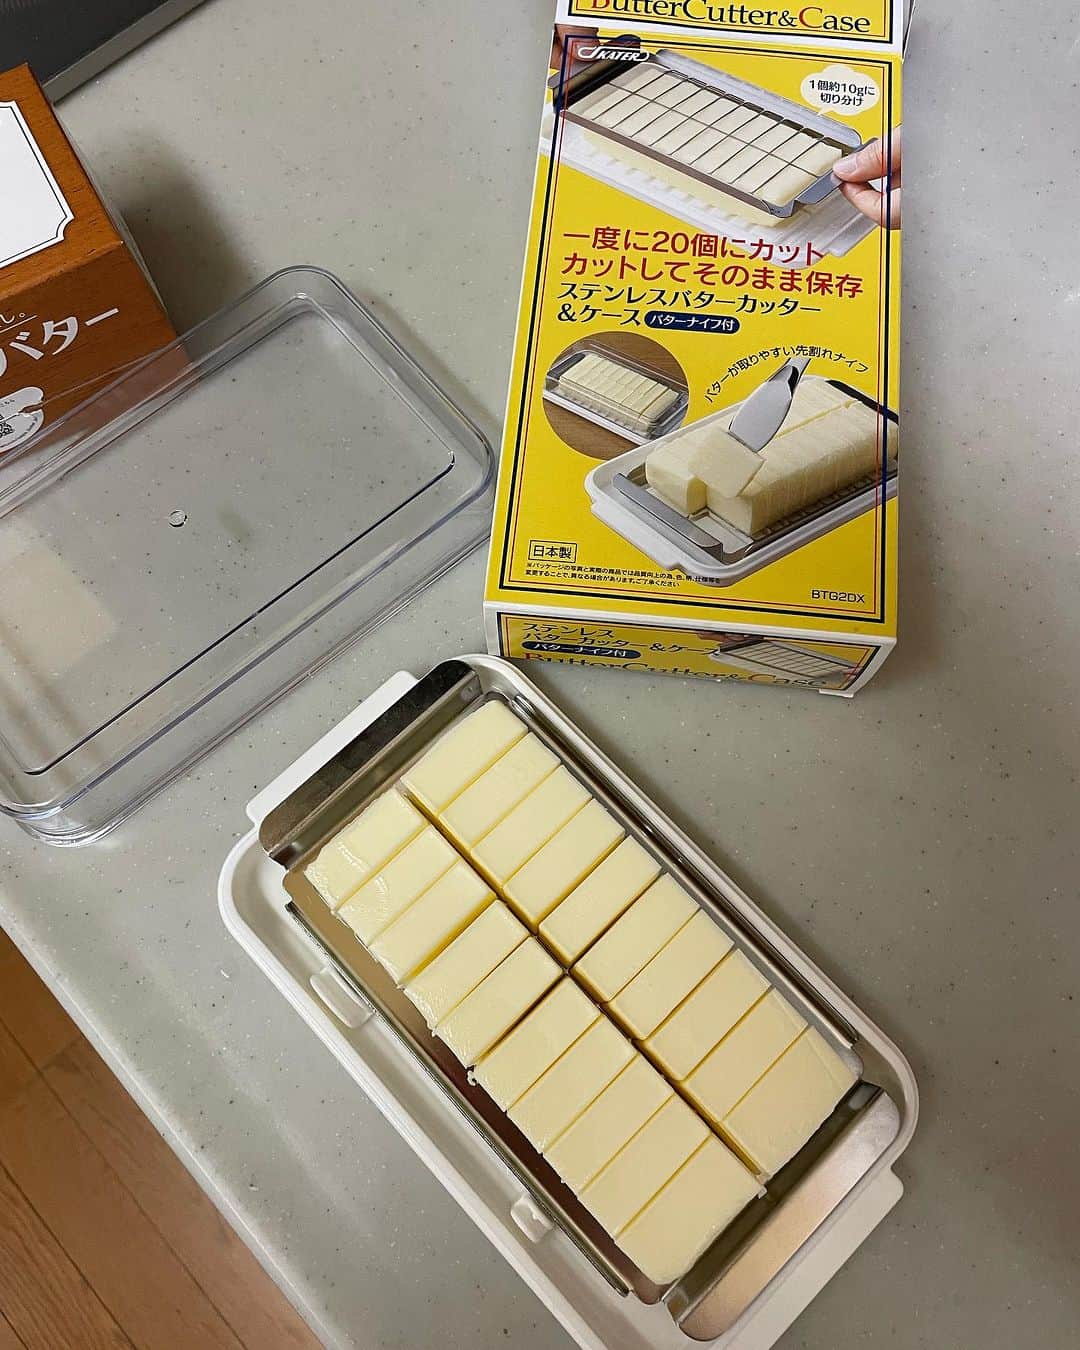 飯島直子さんのインスタグラム写真 - (飯島直子Instagram)「こんばんは^ - ^♪  秋らしい涼しい日でした  あっという間に一日が過ぎました  今日はおやつに義兄からもらったチーズナンを食べました^ - ^  ハチミツをかけたらとてもおいしかったです  色んなものがありますね  この時代に感謝です  その後はバターなんか切ったりして  もっさりと過ごし、日が落ちるのを待ち、  ソーラーランプを見に外に出ましたが  点いておらず、なんだよ…ついてねぇじゃん顔が最後の写真です^ - ^  場所が良くないのか、明日移動したいとおもいます^_^  7.8日のへんじすこしです＾＾  miekitayama誕生日おめでとう♪ 塩麹ポークソテーでお祝いしたかな^ - ^ 母に感謝の日だね♪健康に気をつけてステキな一年にしてね♪  ボウリング大会で80人中4位！スゴイね！おめでとう♪まみ！  xiaoye_美香^ - ^元気？  弘子♡  知美！知美！( ´ ▽ ` )  あくびちゃん元気？職業病かな…大事にしてね(*´-`) 今日も安全運転で！  pill♪もちろん^ - ^心臓検査良かったよ！内臓脂肪は運動がんばろう٩(๑❛ᴗ❛๑)۶  純子♡  ルミナラキャンドル！？チェックしまーす^ - ^♪  miekitayama♪初コメント挑戦ありがとう^_^仲間だね♪  魚プレート、網の下受け皿に若干アブラ飛ぶ、 うん、とぶね^ - ^え？わたしも放置^ - ^ 年末洗おう♪ゆき子！  いちごちゃん15才♪元気に迎えられてよかった^ - ^ 長生きしてね！ふういちママ♪  masa♪  かなみ！  北海道石狩市は明後日から雪マーク！冬支度だ！ ミッシェル育子めんこいべさ♪  お隣さんがギターの練習…毎回同じ所で間違え 気になって昼寝できなかった…笑笑、今夜はよく眠れるよ！亜子♪  くんさん♪いつもありがとう♪  職場と好きな上司とも決別したが忘れられず… そうか…つらかったね…モヤモヤが止まらないかな… 悲しかったけど、その決断は正解だったとわたしはおもうな… 上司があなたとの関係を仕事ではなく恋愛対象として見ていたのだとしたら、あなたが辞めても連絡がくるとおもう、自分のキモチに整理をつけて ハッキリとキッパリとしたいのであれば 職場には戻らないが付き合えるのかを聞いてみたらどうかな？ うやむやだったから諦めきれないんだよね(´･_･`) 勇気出してキモチに決着つけよう！美奈子！  学びの巻…^ - ^何があってもヘタることなく 学びに変えられる事はすばらしい発想だね^ ^ punouhane！  としこ、関空なうなんやな、野暮用かいな^ - ^ 気ぃつけて帰りなはれ、すこしリフレッシュしたらええがな^ ^東京にも遊びにきてな、ほなな♪  みぃーん♪  kimmie！ケガの調子どう？少し良くなったかな…  セブンのベスト3は、コロッケ、ブロッコリーバジル惣菜、ユッケジャンスープだよ^ - ^kyoko♪  今日も一日お疲れさまでした  ちょっと早いけど  みんなゆっくり眠れますように  おやすみなさい  いい夢みろよ  また明日╰(*´︶`*)╯♡♡」11月9日 20時20分 - naoko_iijima_705_official